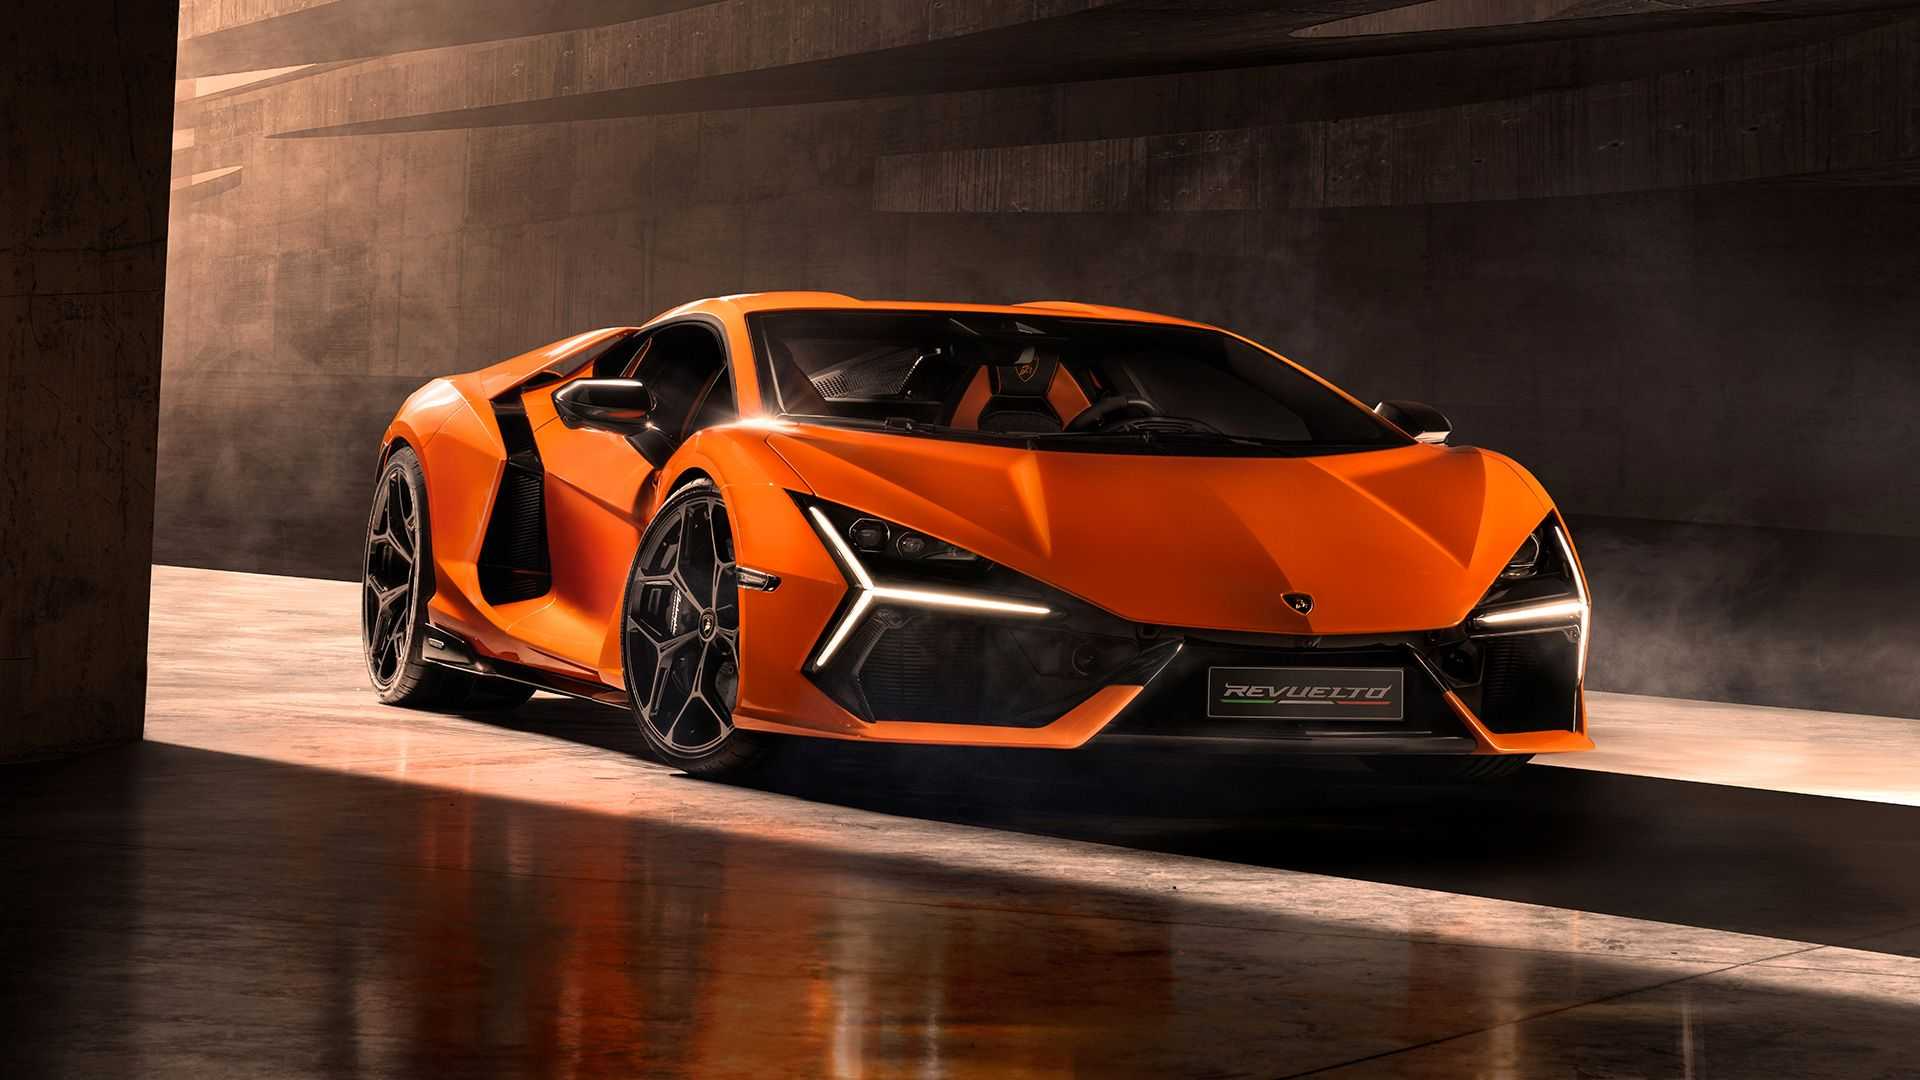 1015  350          Revuelto   Lamborghini